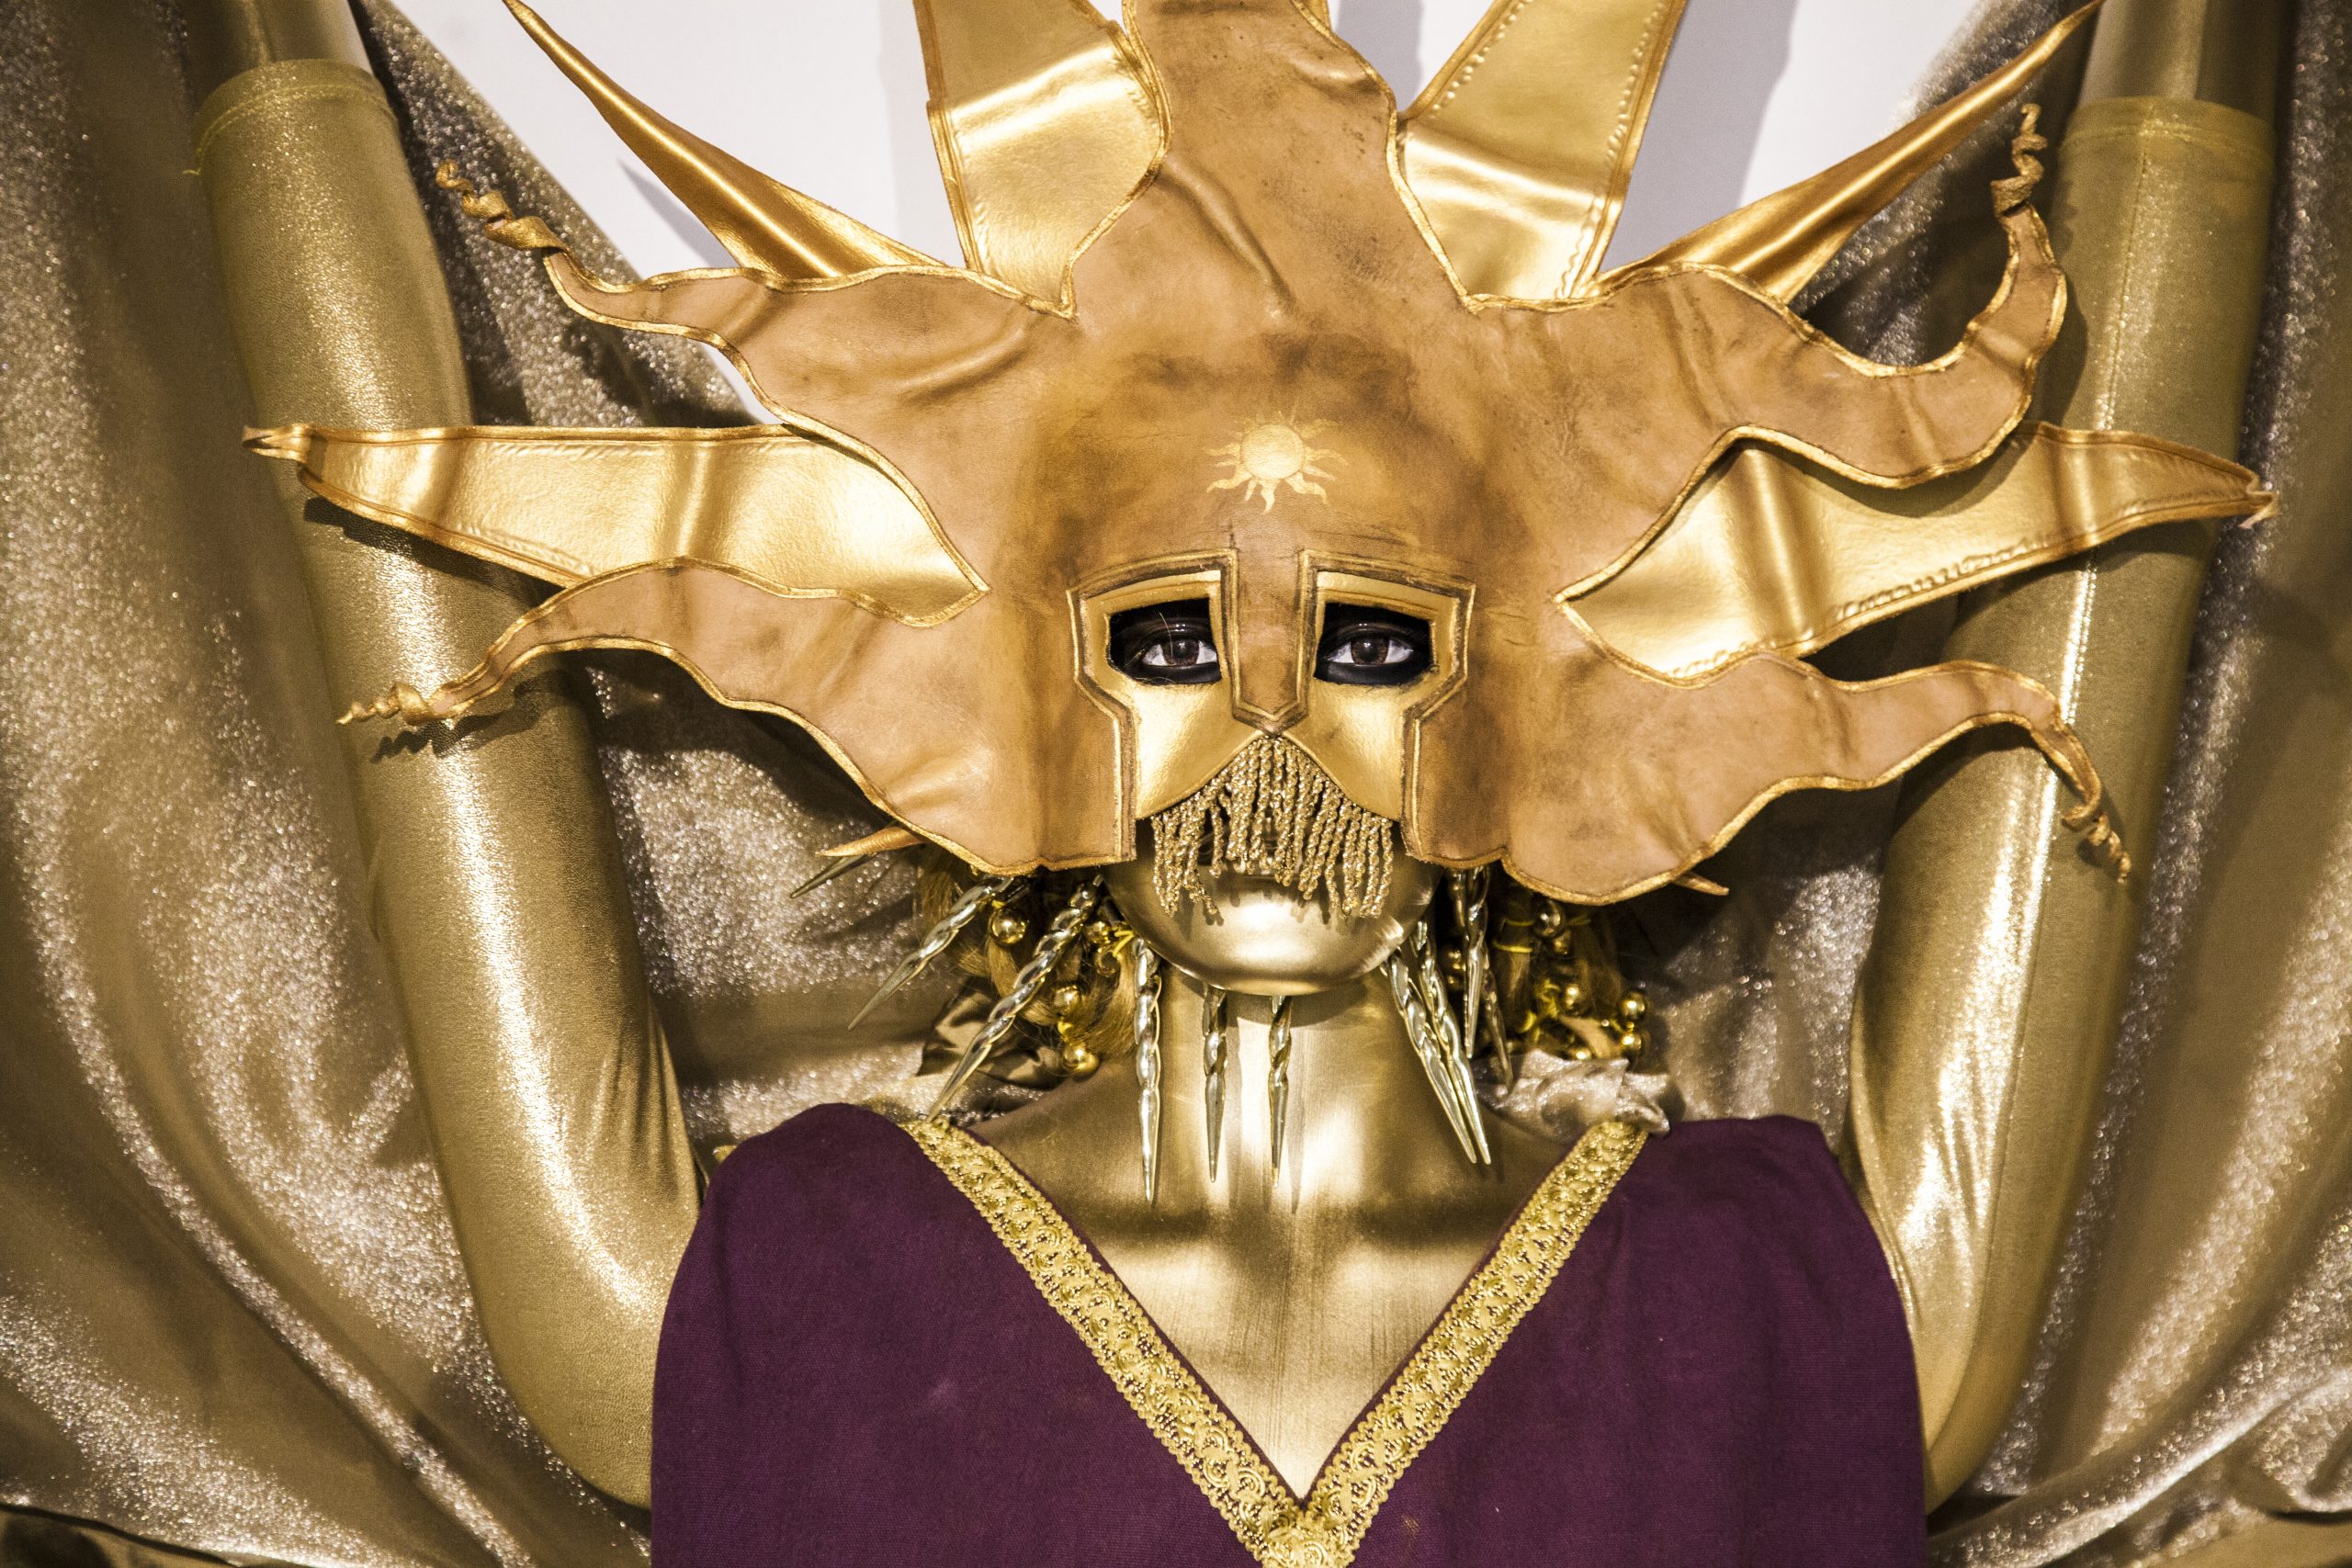 A golden clad dummy wearing a golden sun mask